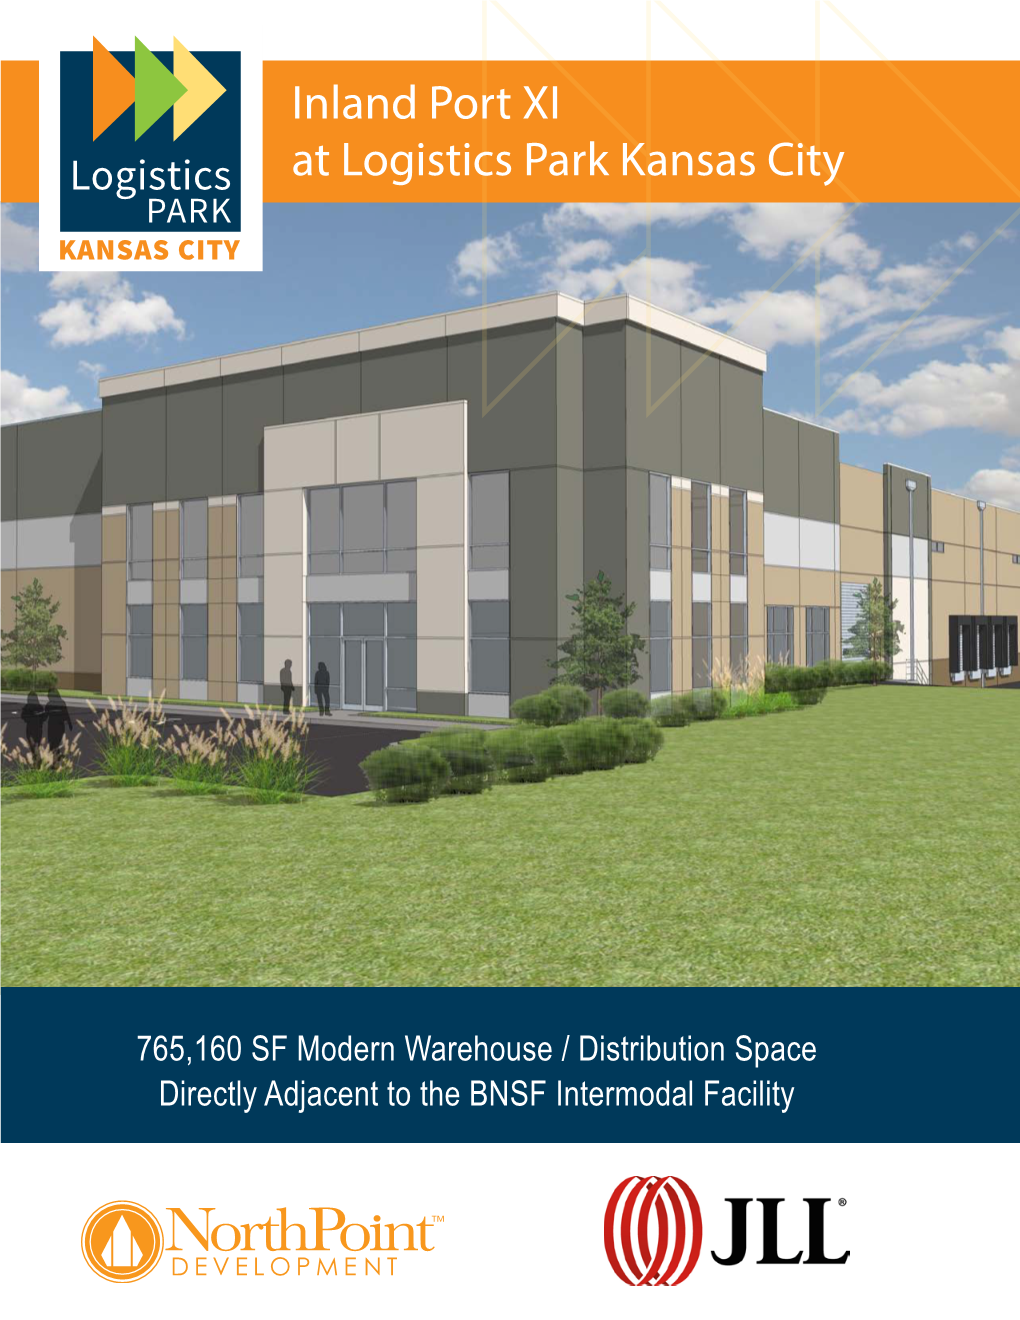 Inland Port XI at Logistics Park Kansas City